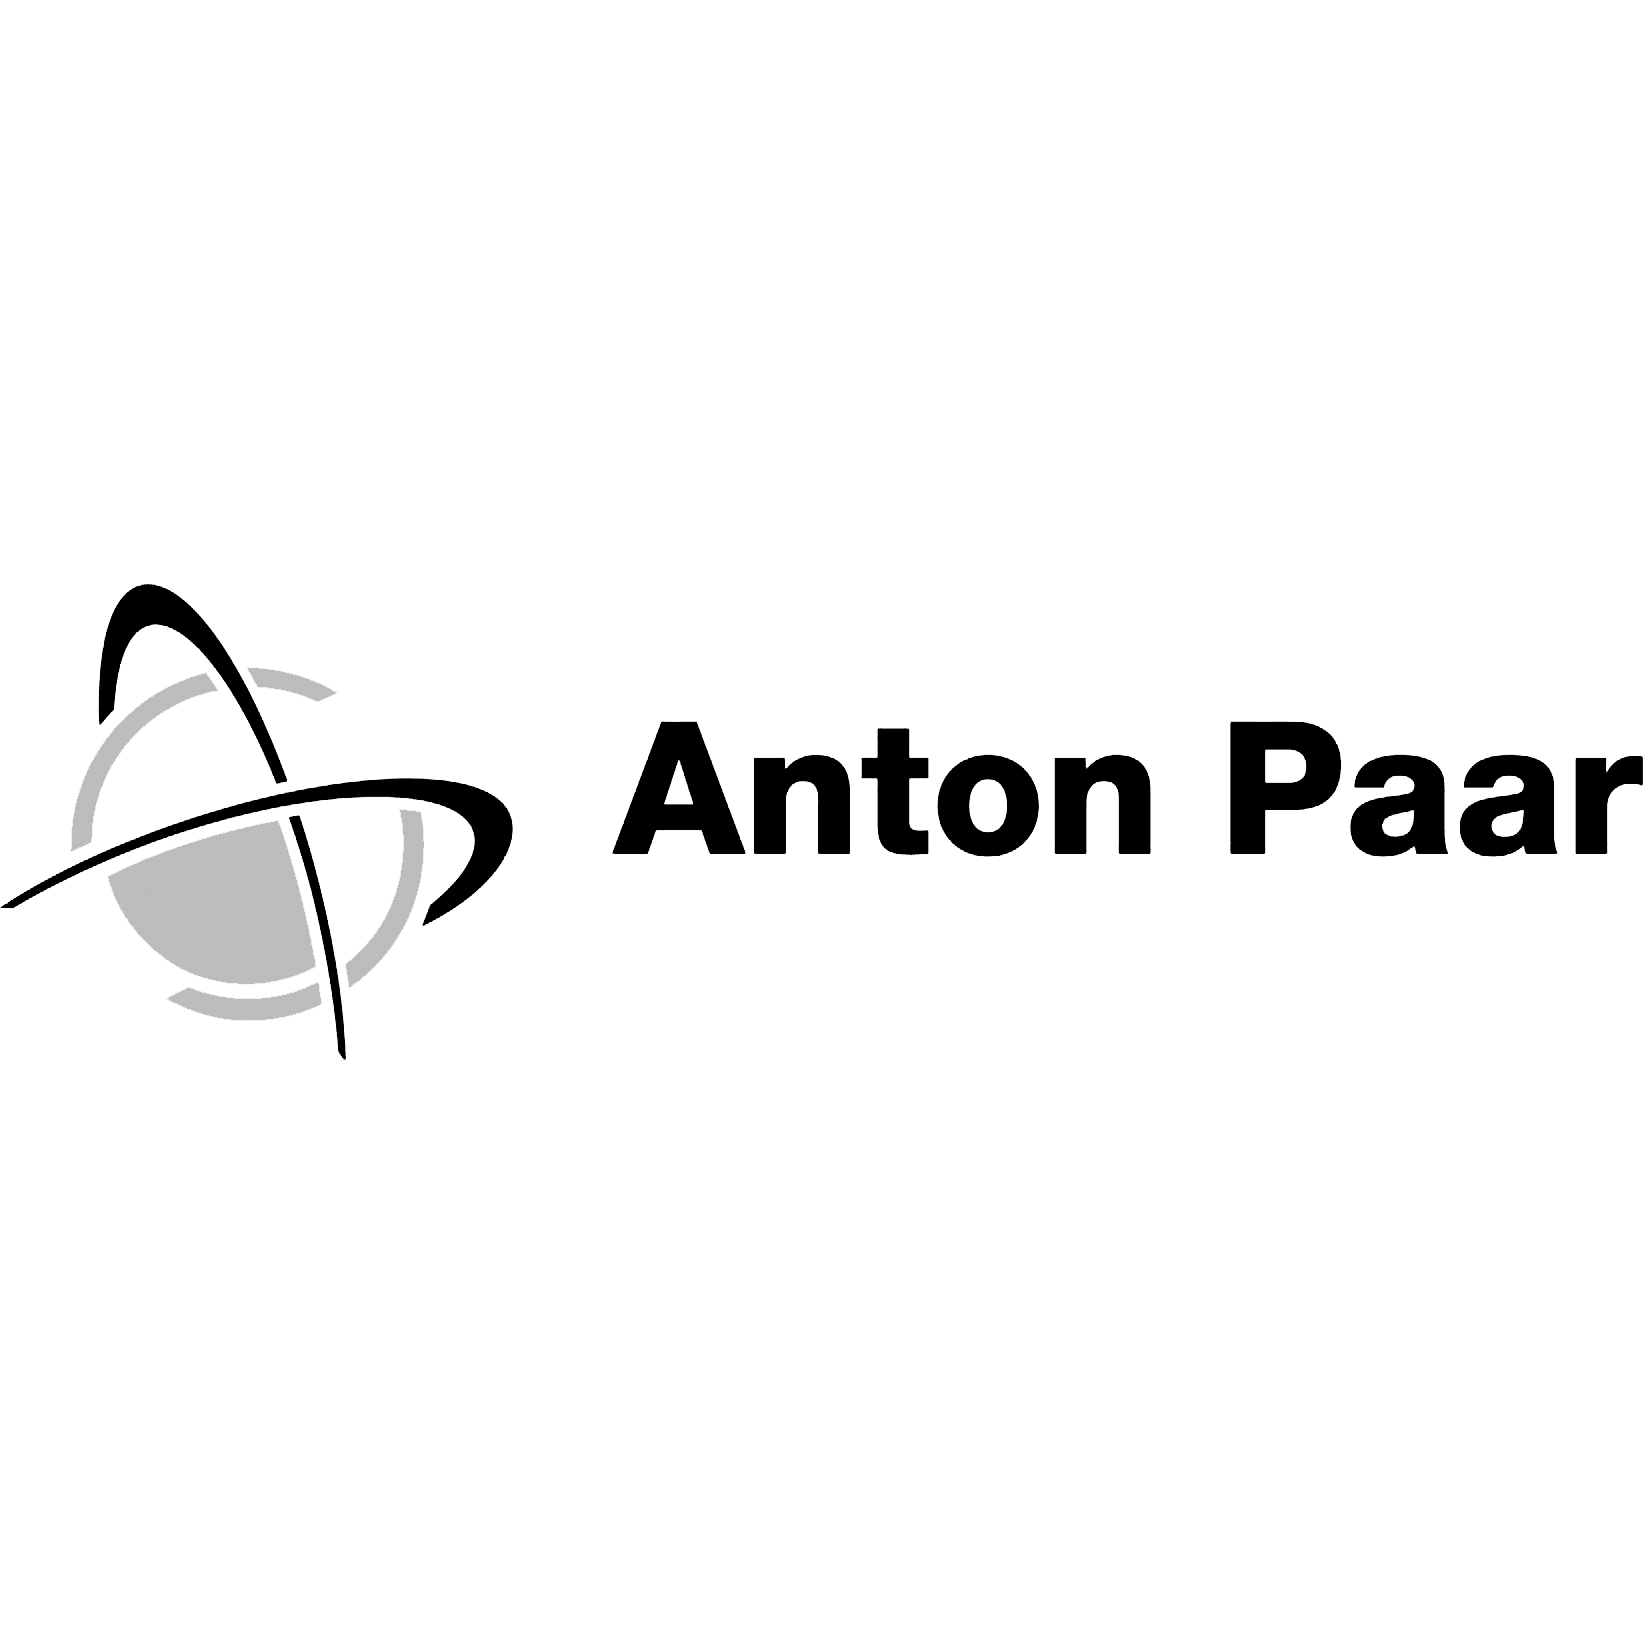 Anton Paar-Logo auf einem Hintergrund.